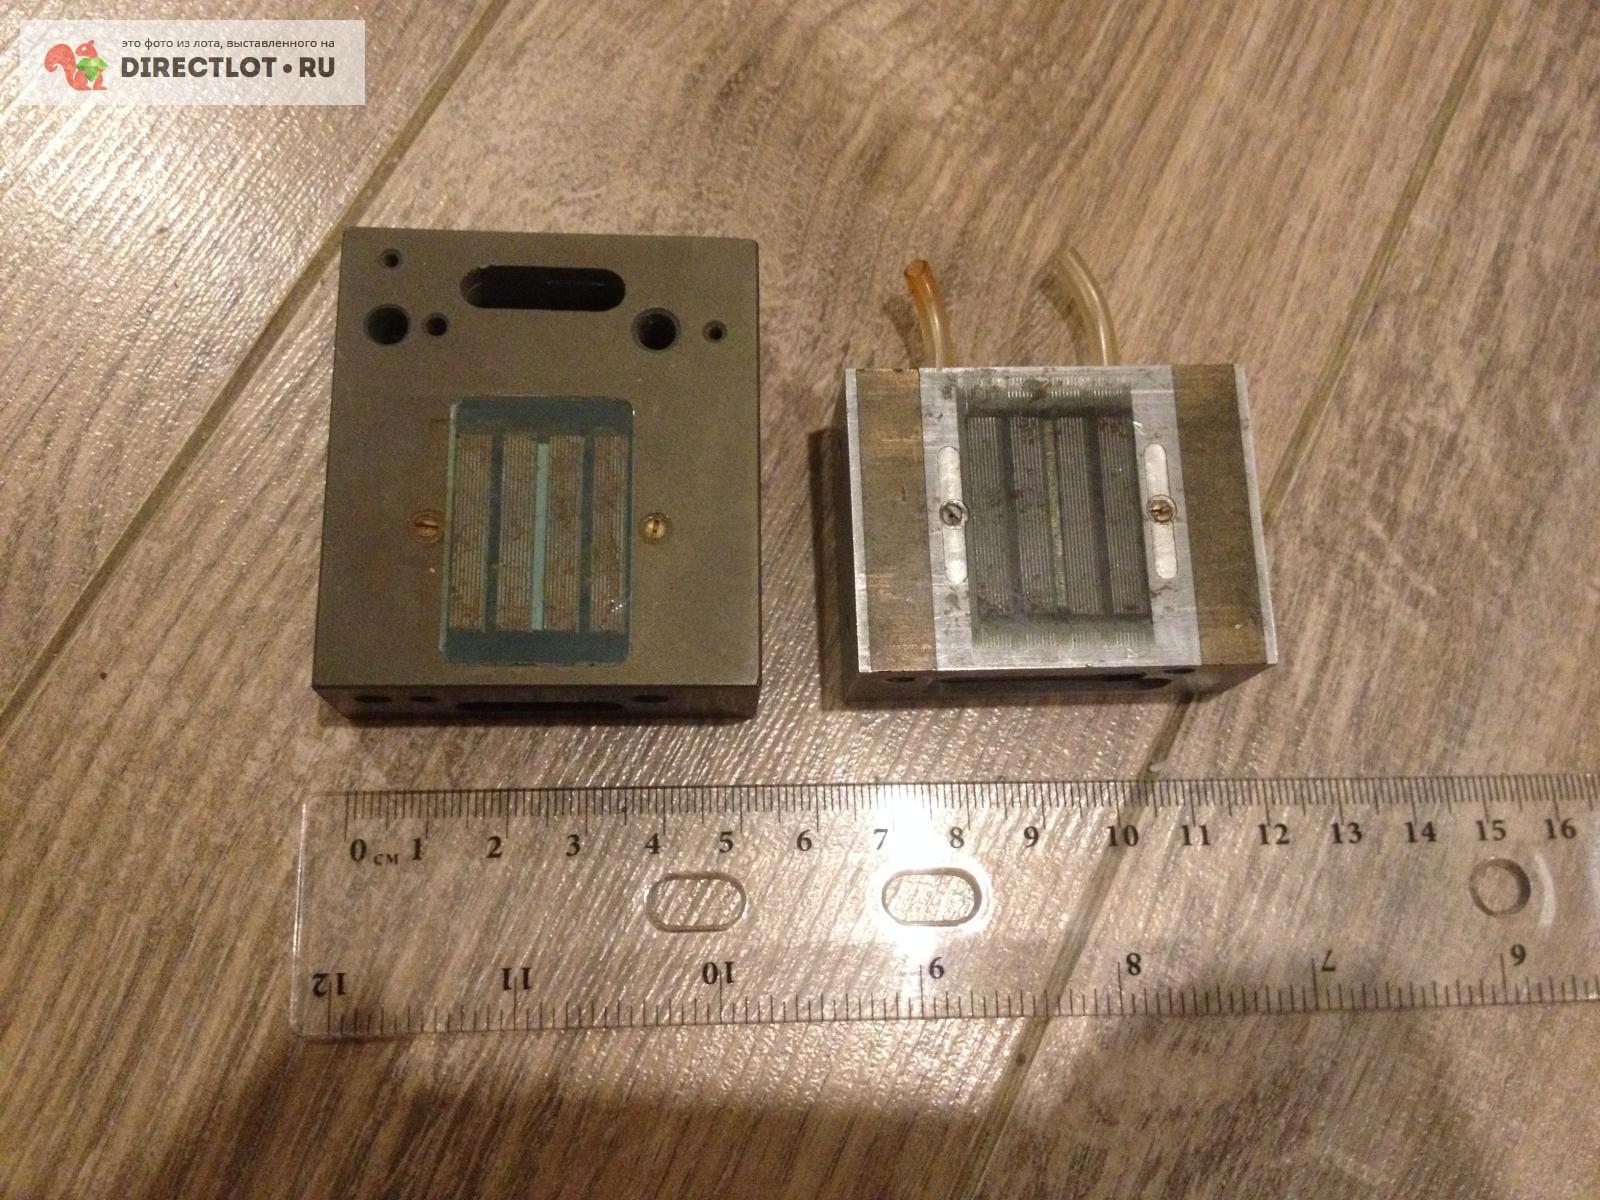 миниатюрная магнитная плита N1 микро размера   цена 400 Р .